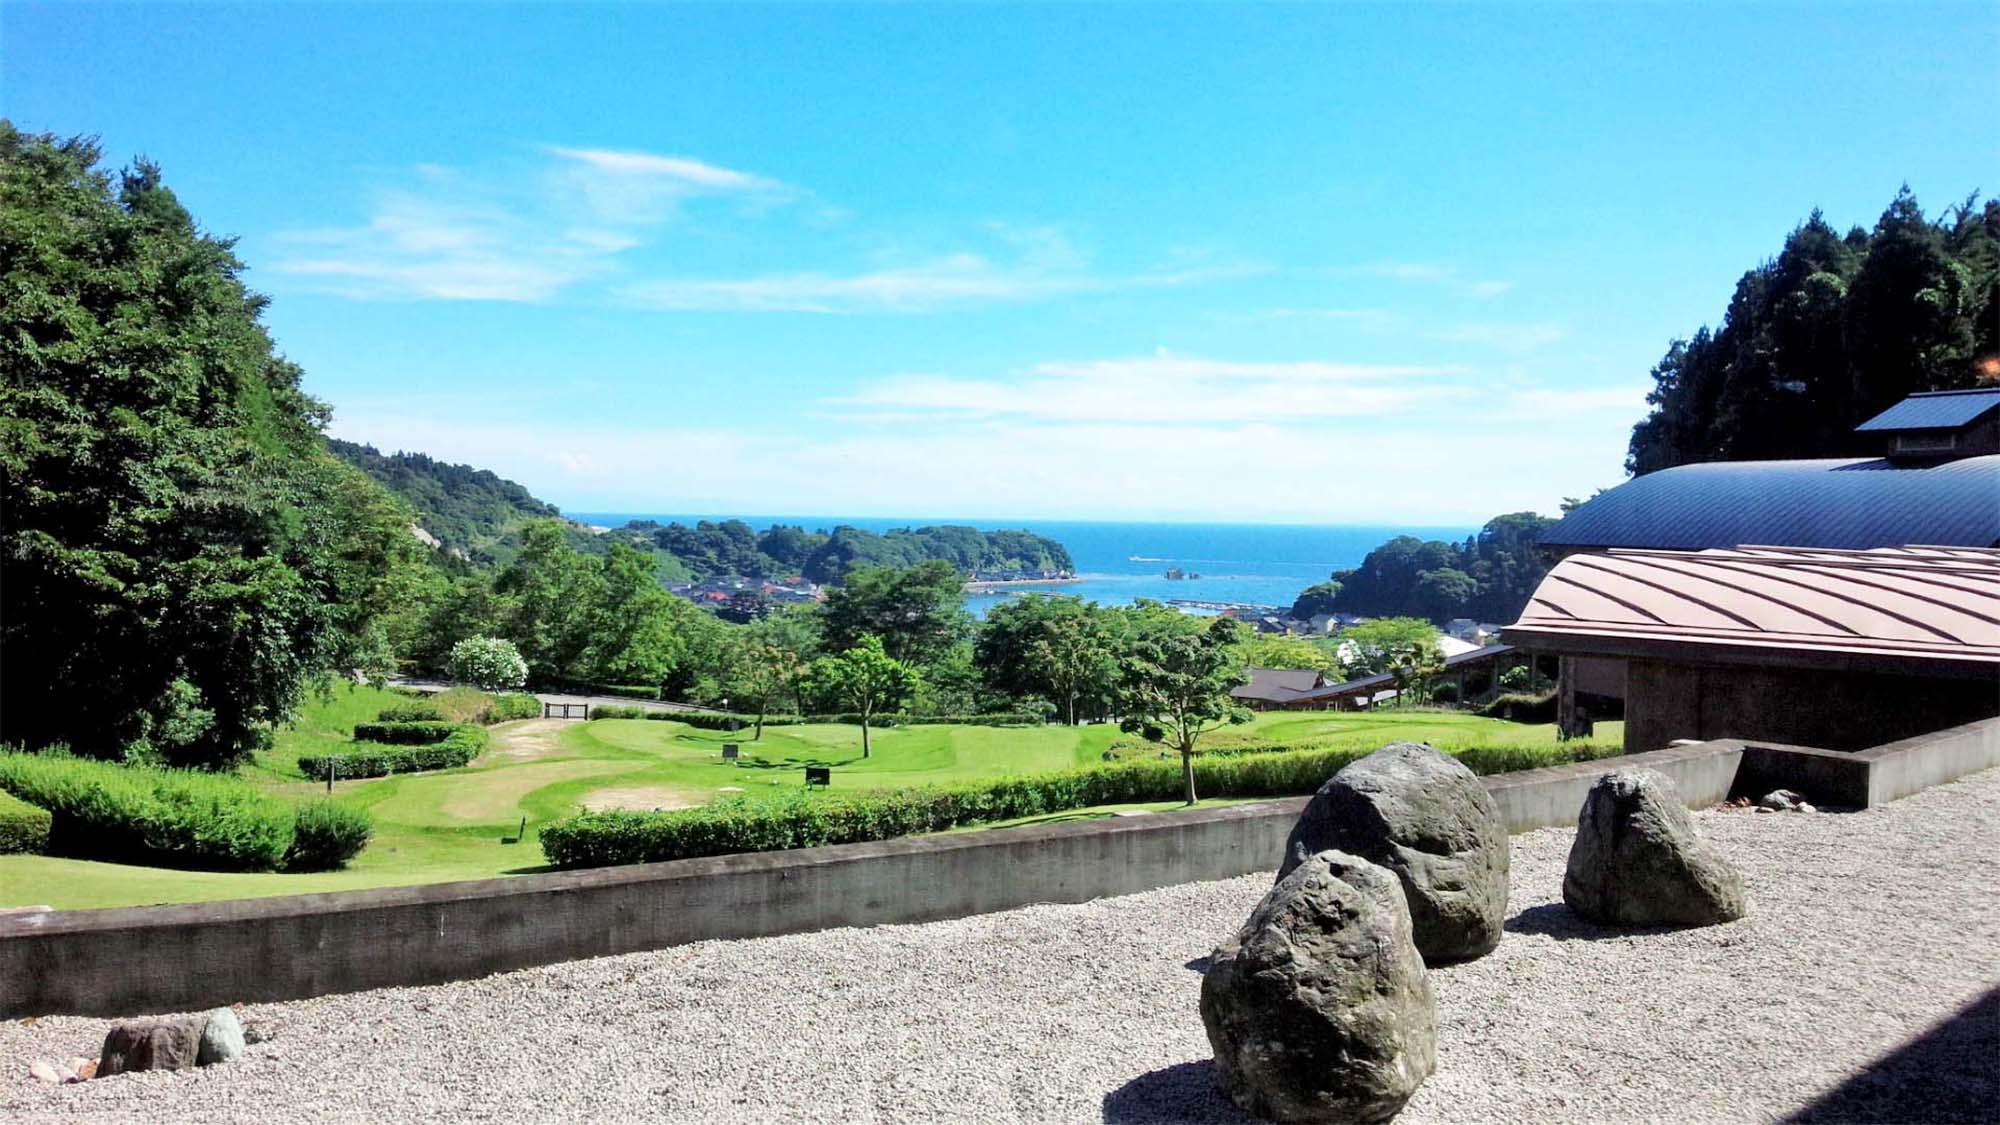 ・【真脇遺跡公園】日本海を見下ろす丘陵地にございます